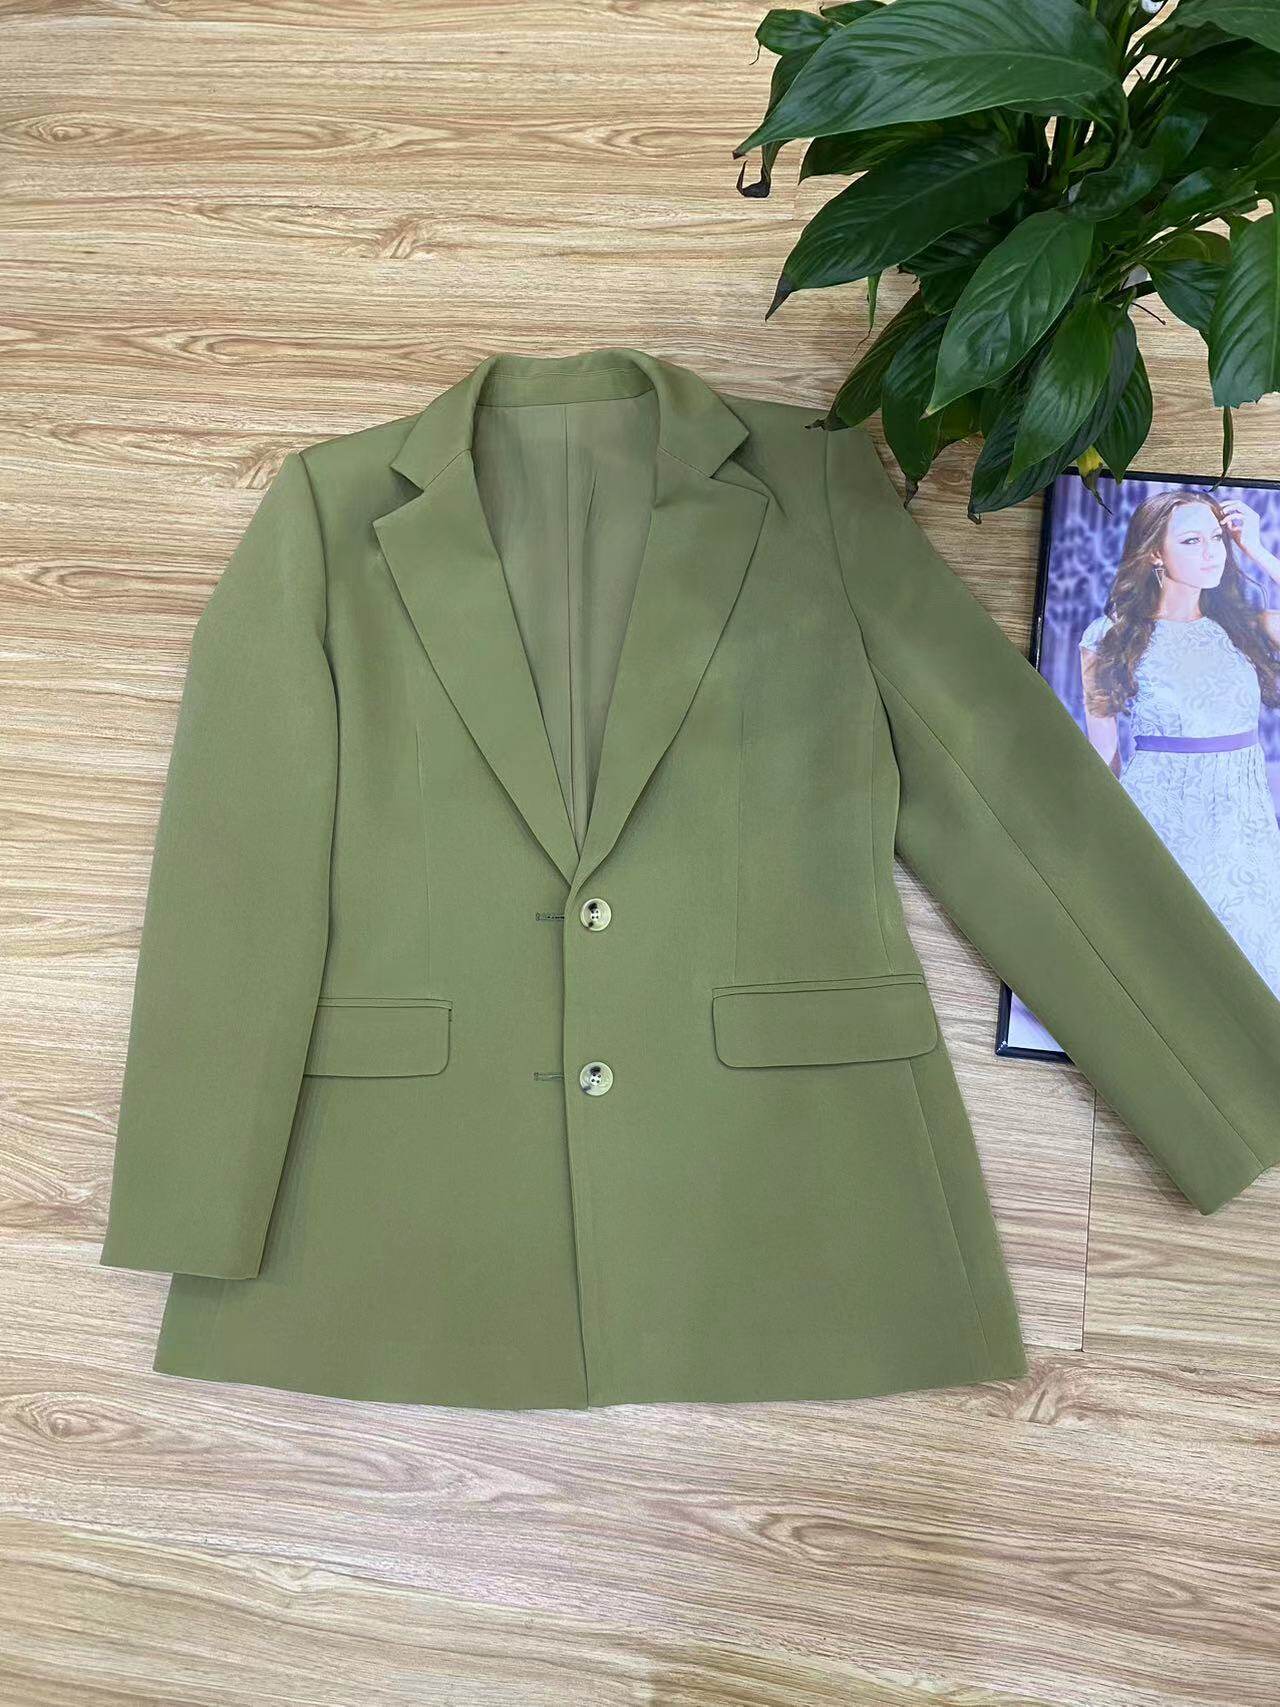 Fashionable British style, trendy retro seaweed green, westernized suit jacket